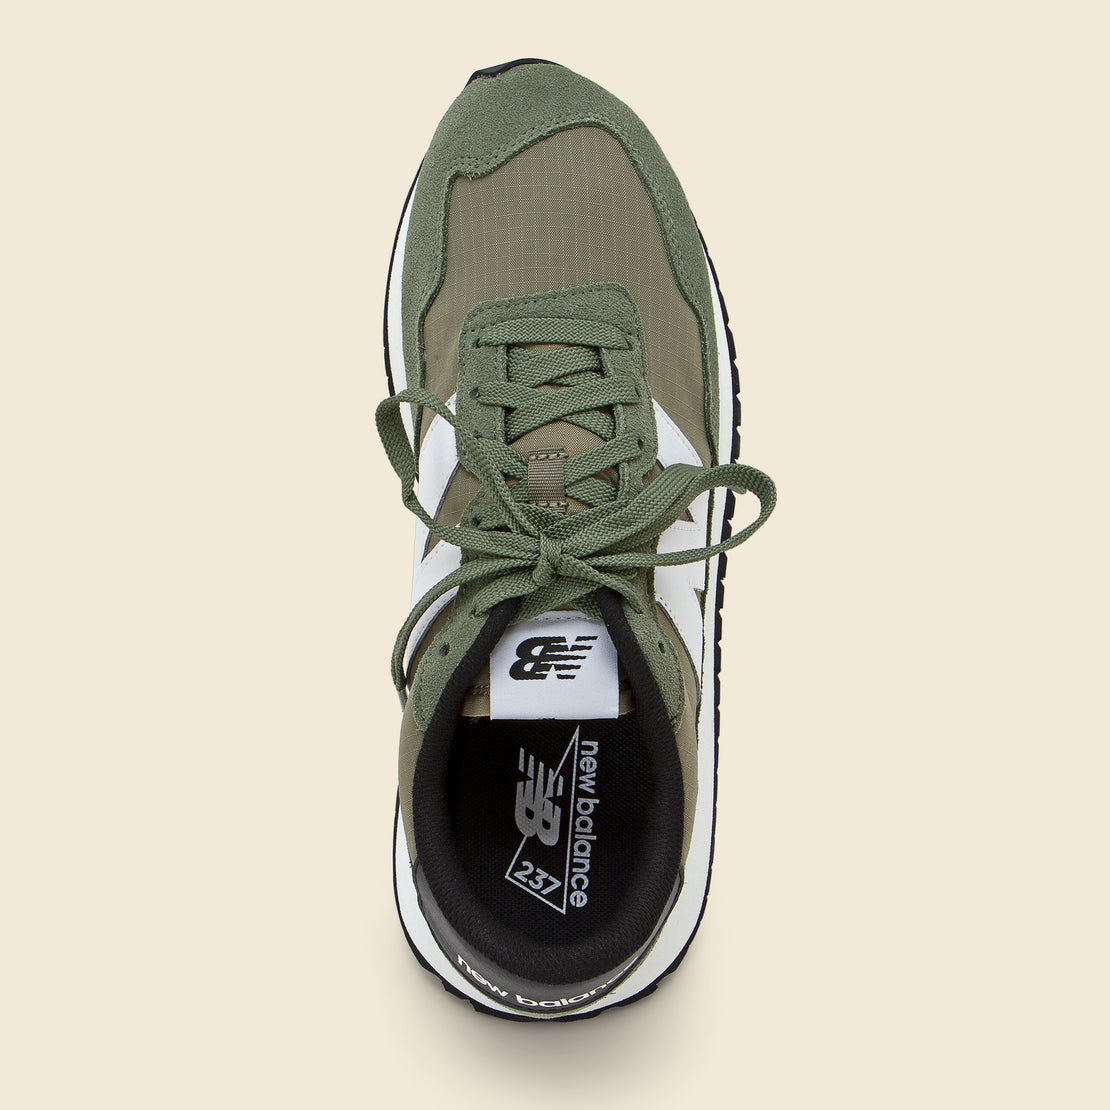 237V1 Sneaker - Norway Spruce/ Covert Green